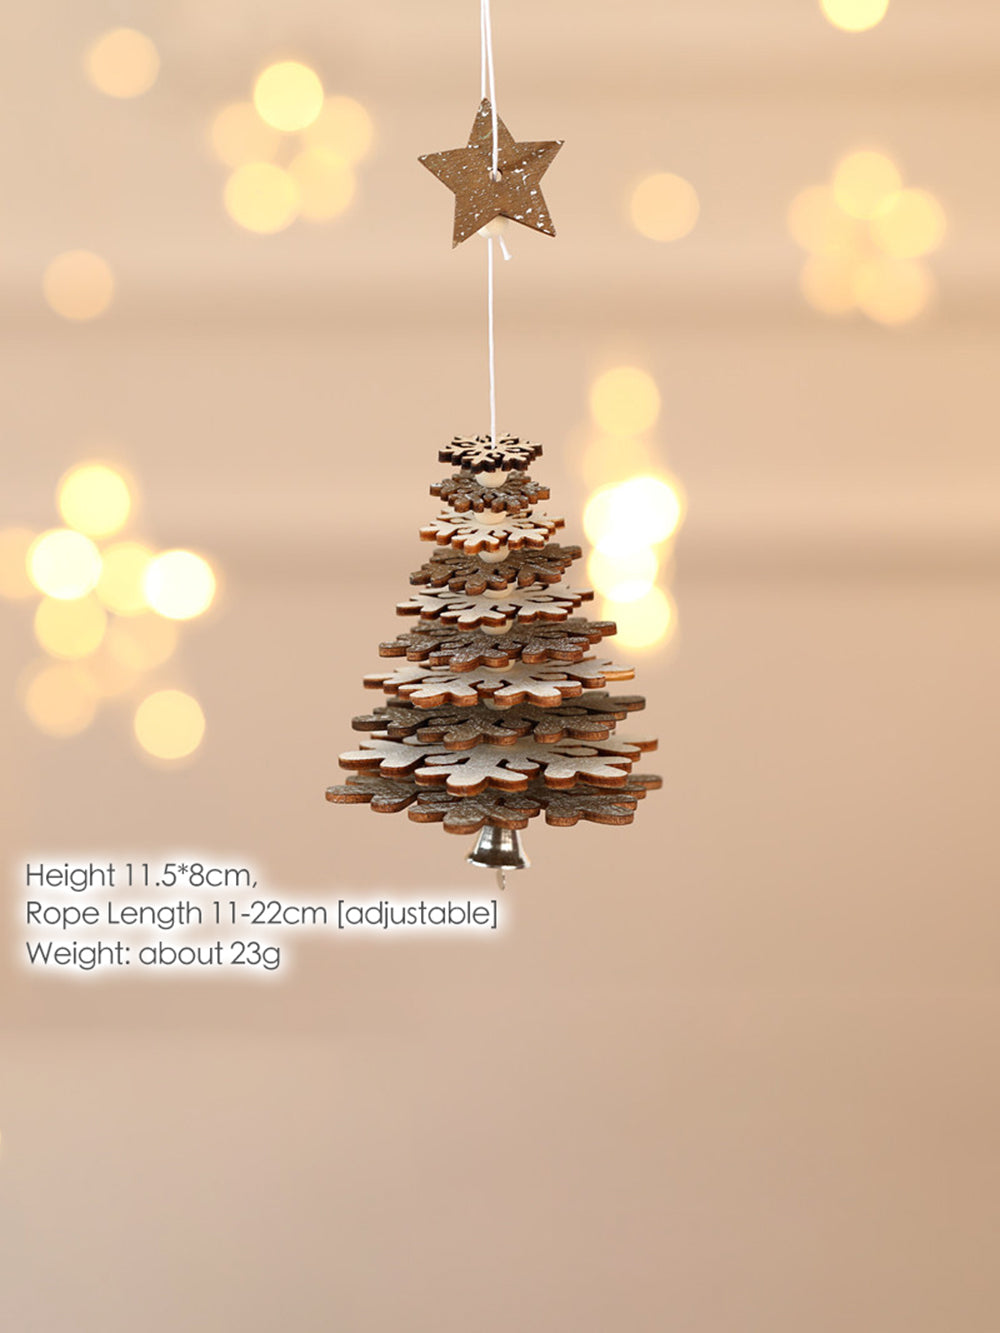 Fiocco di neve stella a cinque punte di Natale con pendente a campana